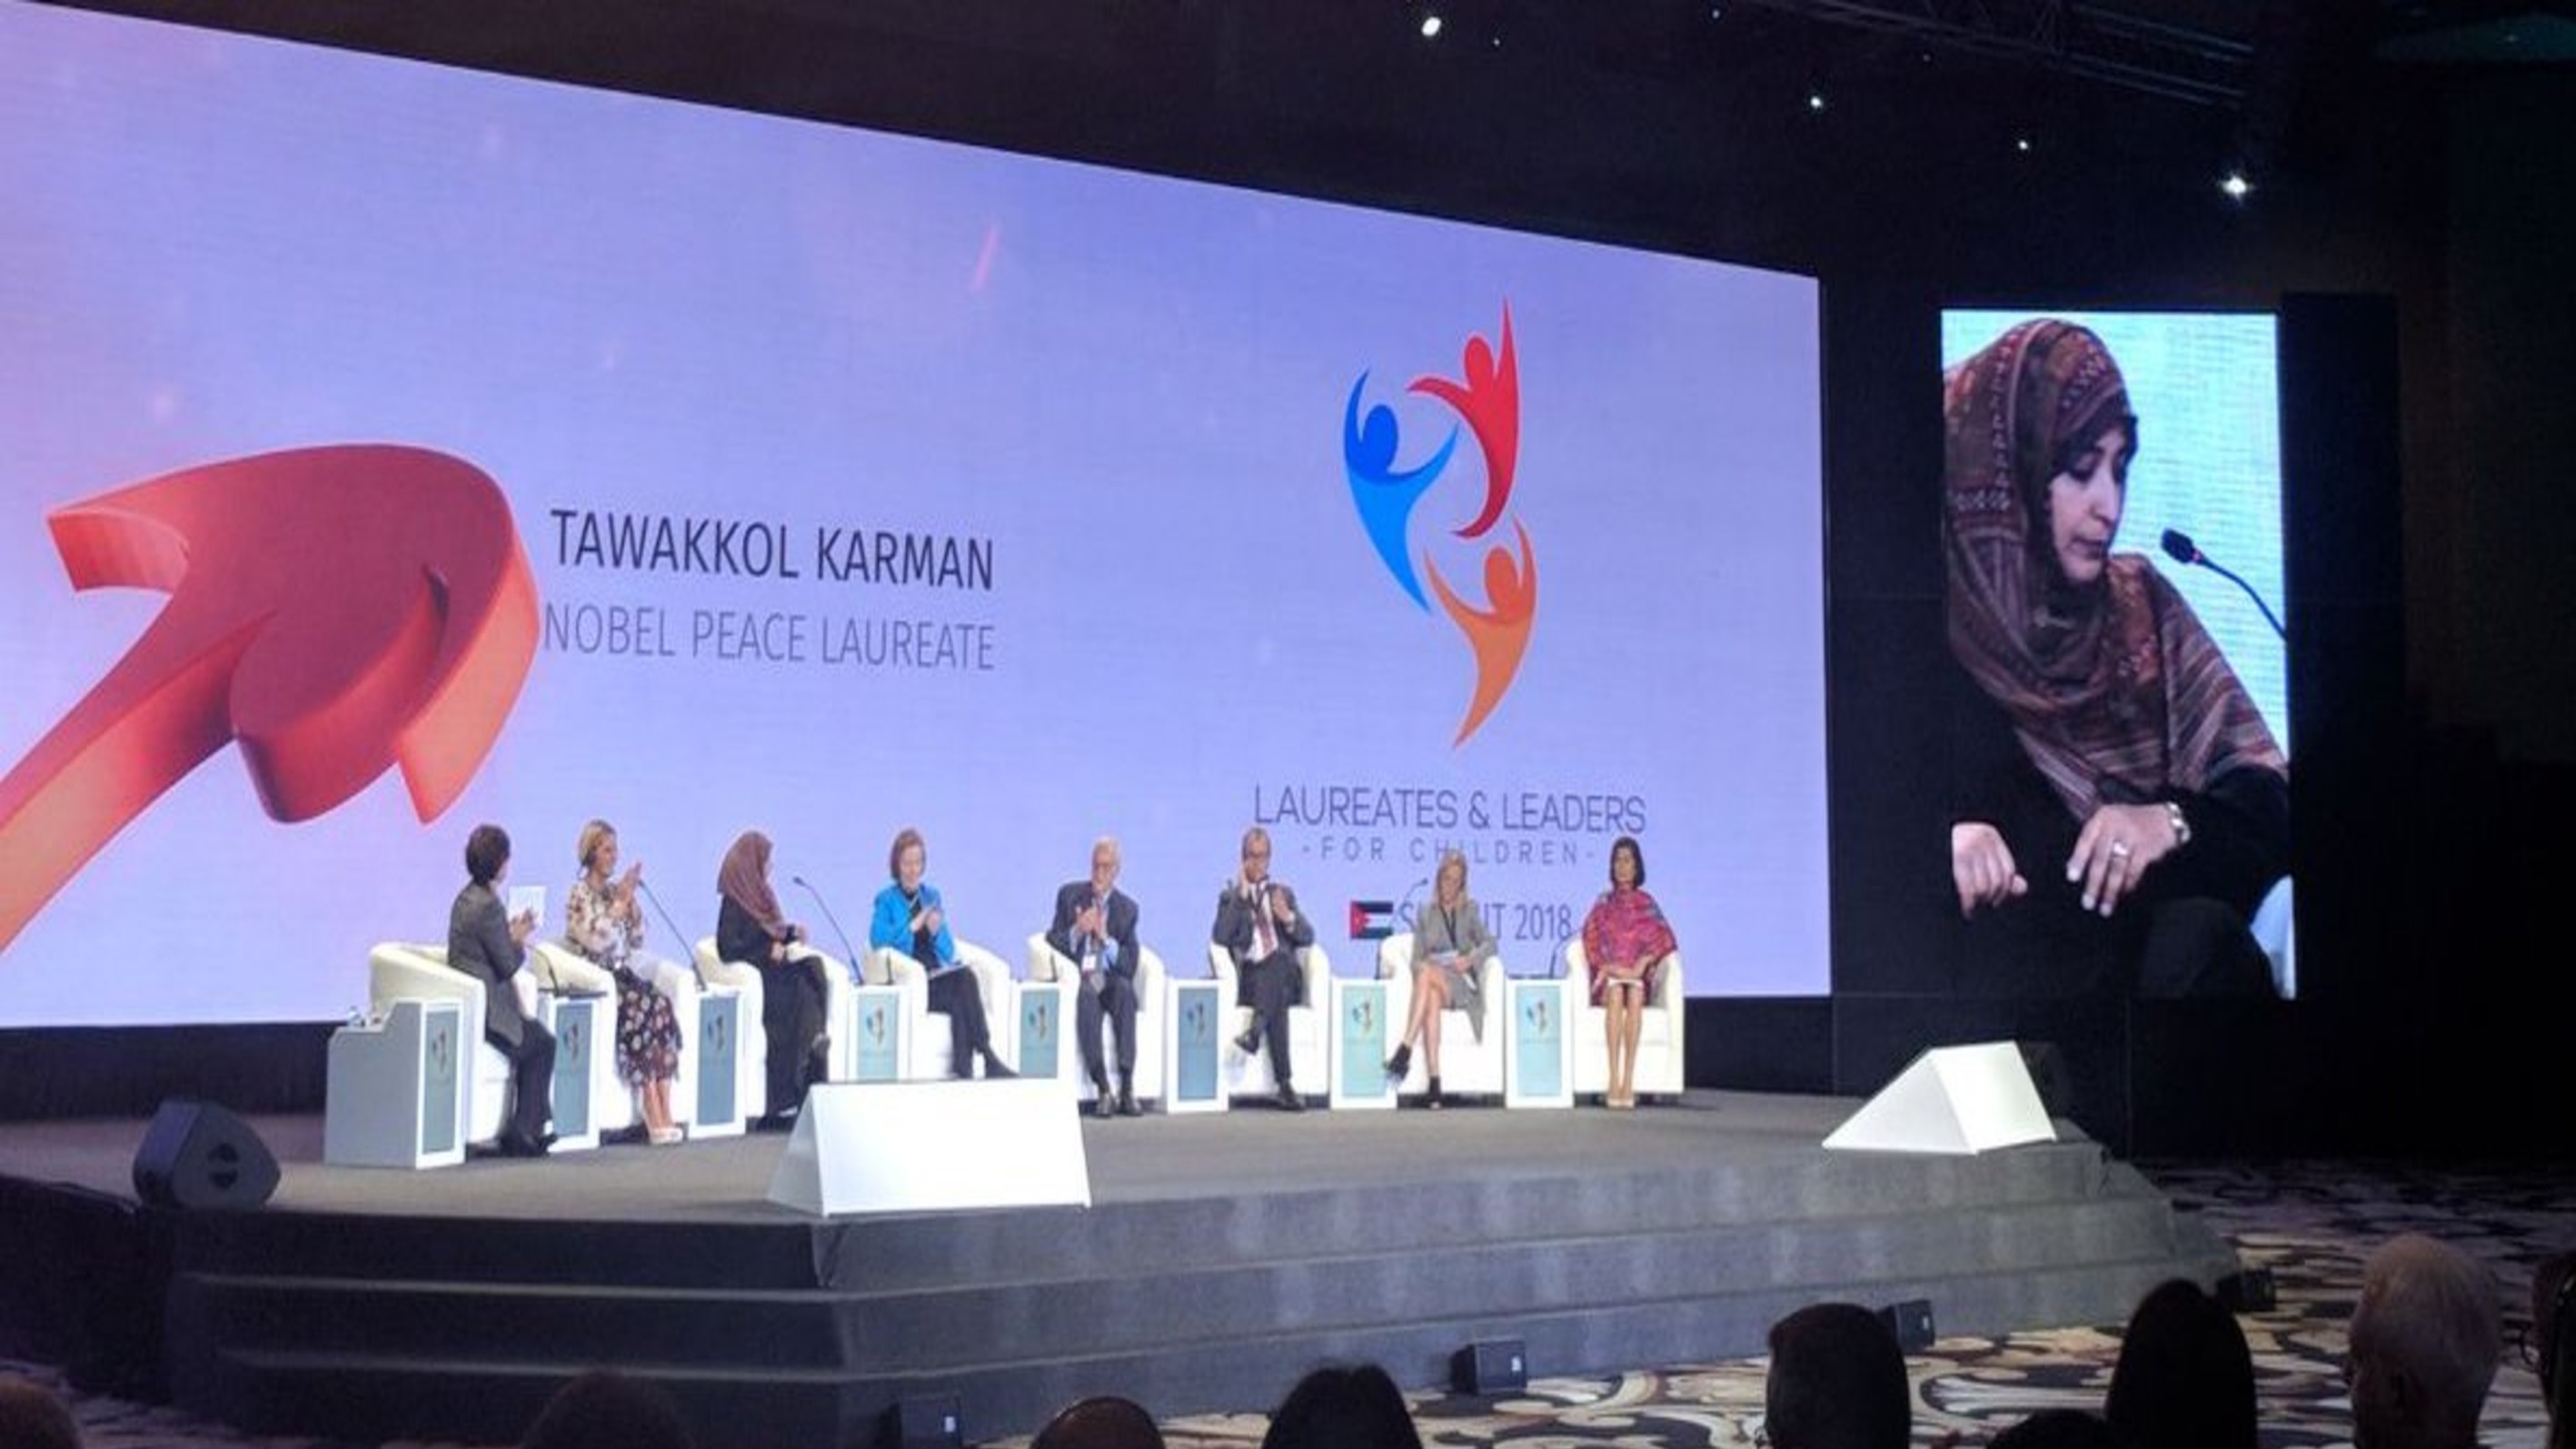 كلمة الناشطة الحائزة على جائزة نوبل للسلام توكل كرمان في قمة الحائزين على جائزة نوبل للسلام والقادة من أجل الأطفال 2018 - البحر الميت/الأردن